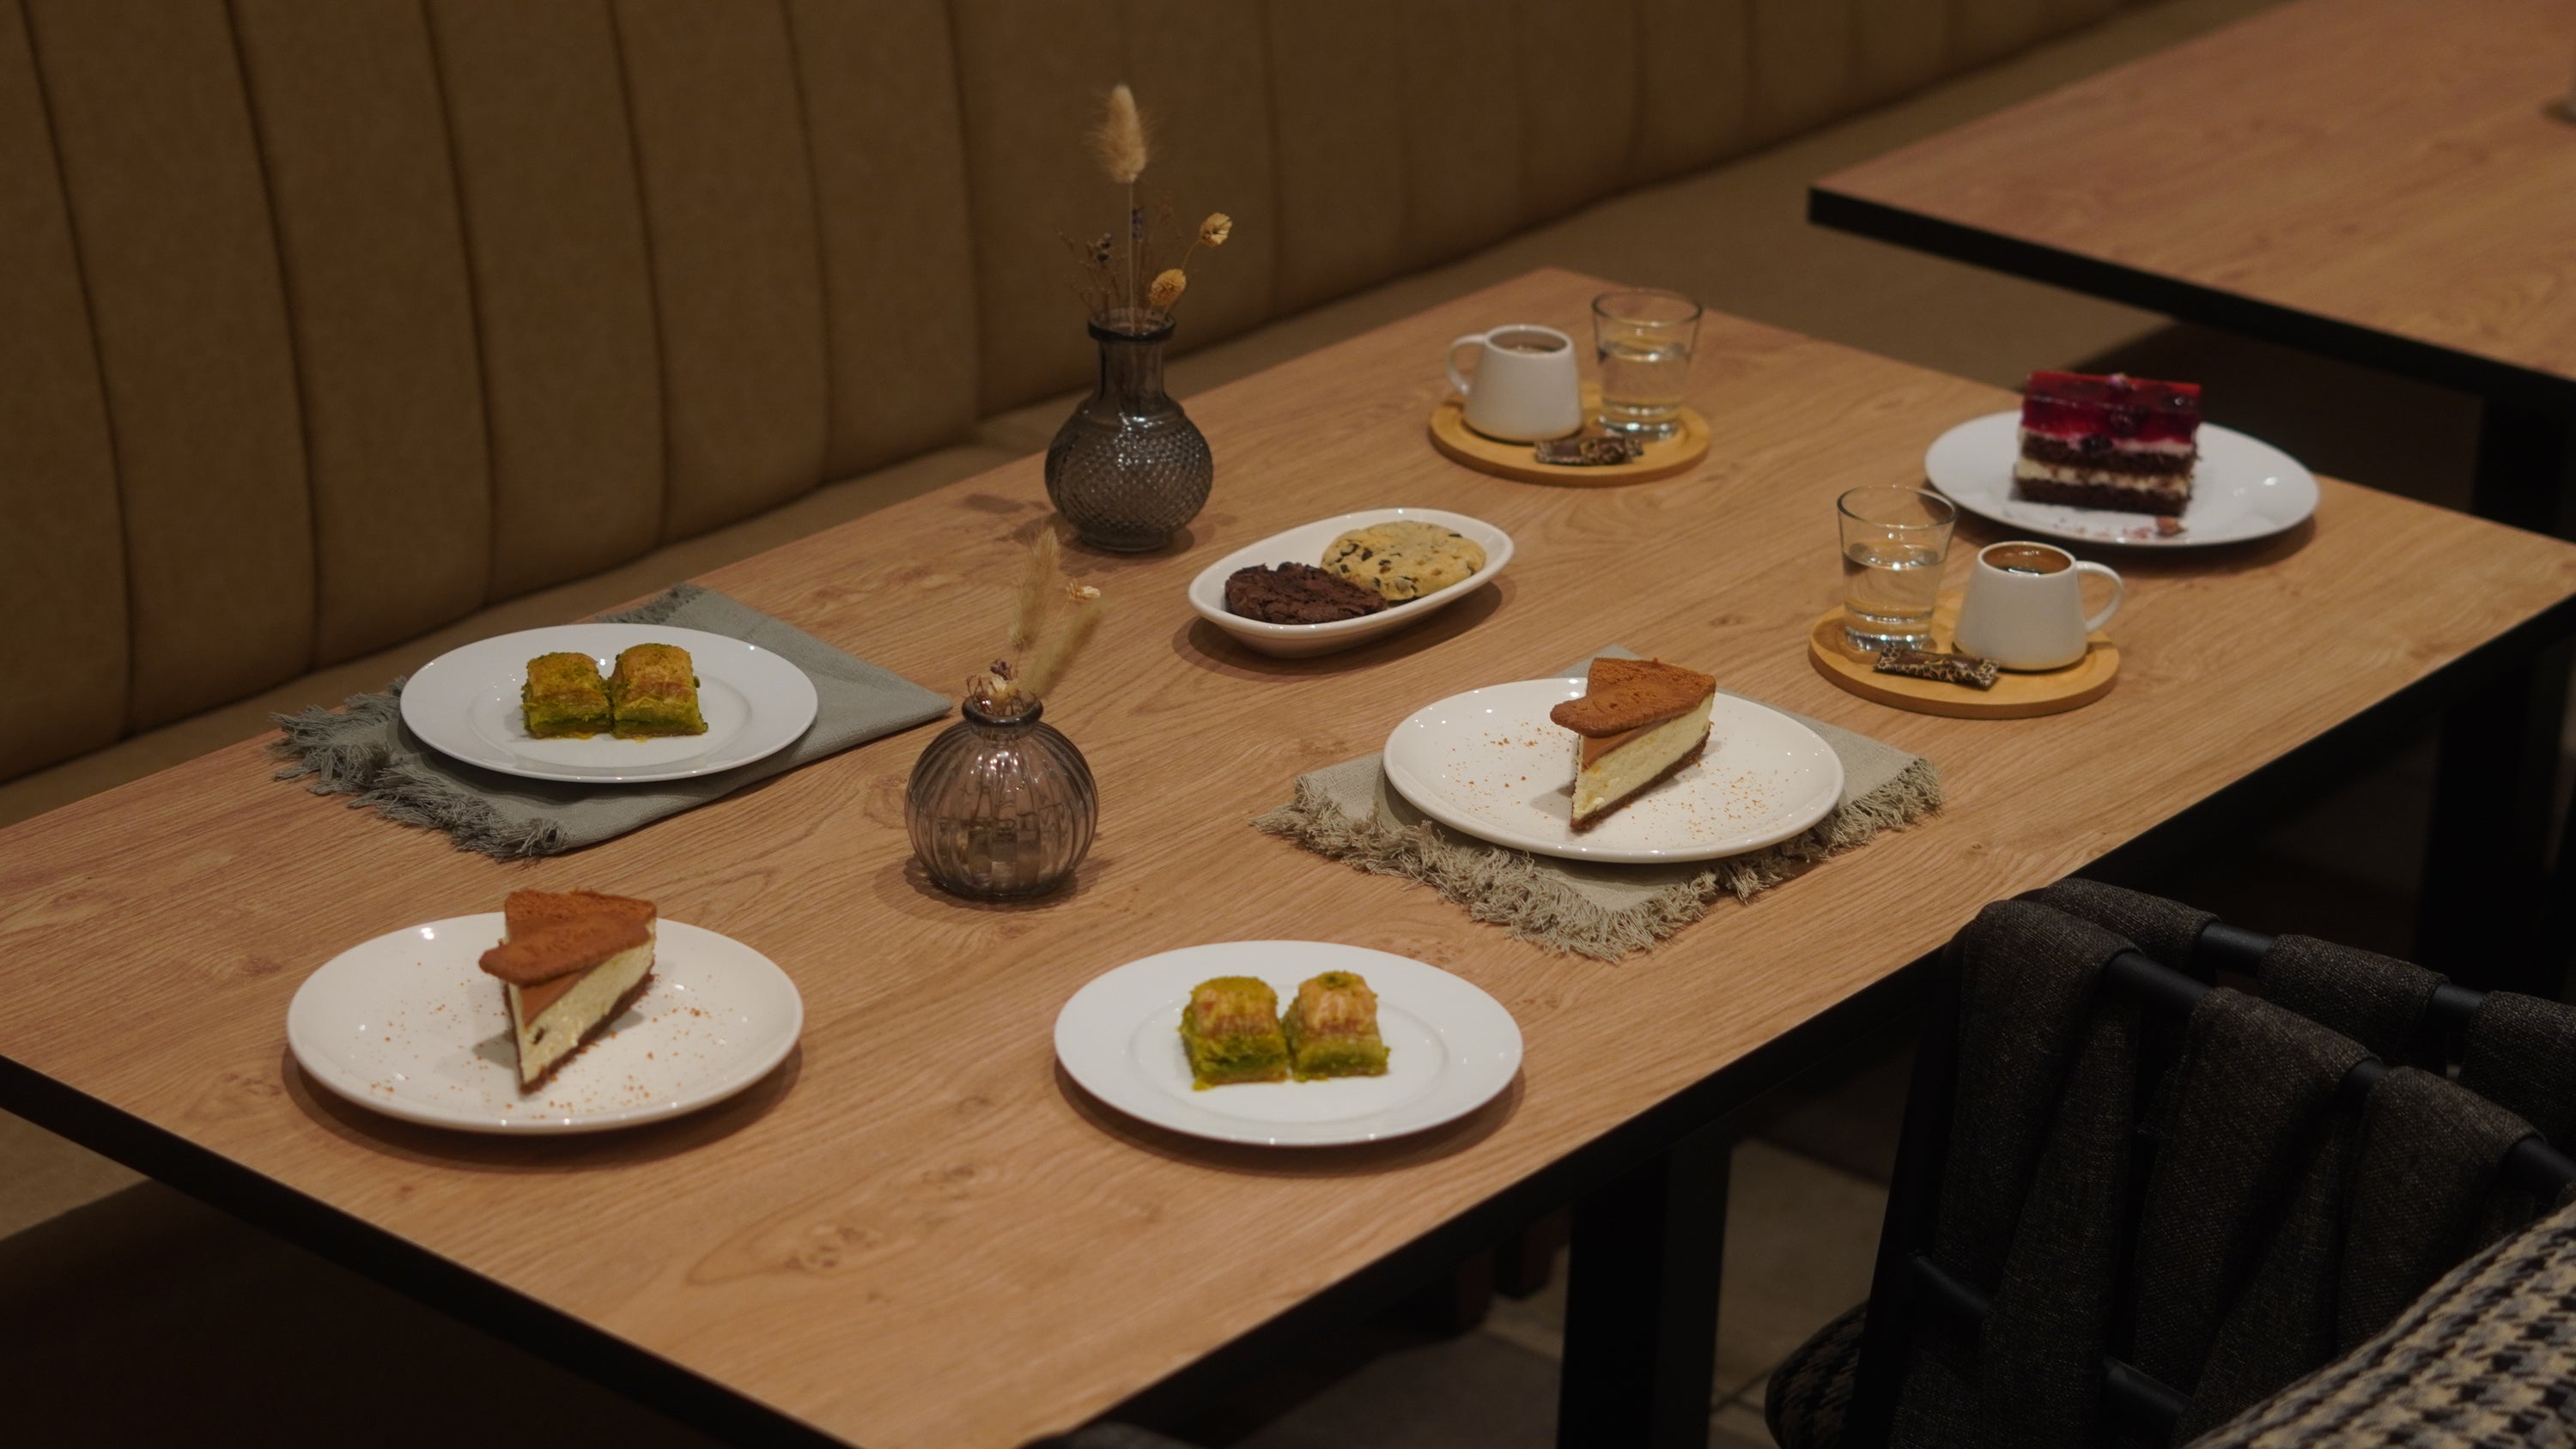 8 Nachtischkreationen dekoriert auf einem Tisch in Eiche-Farbe in einem türkischen Restaurant.